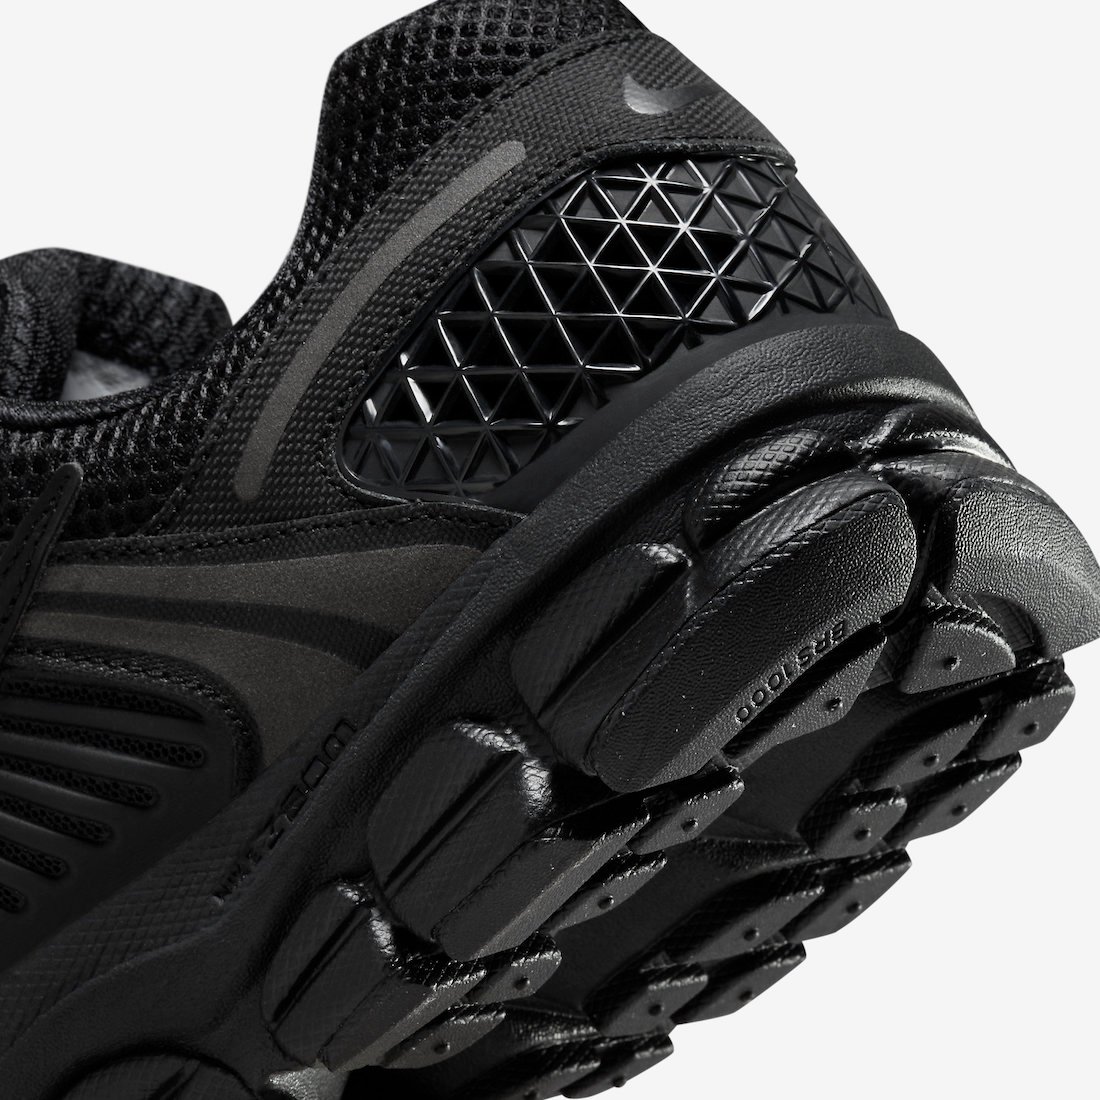 Nike Zoom Vomero 5 Triple Black BV1358-003 Release Date | SneakerFiles